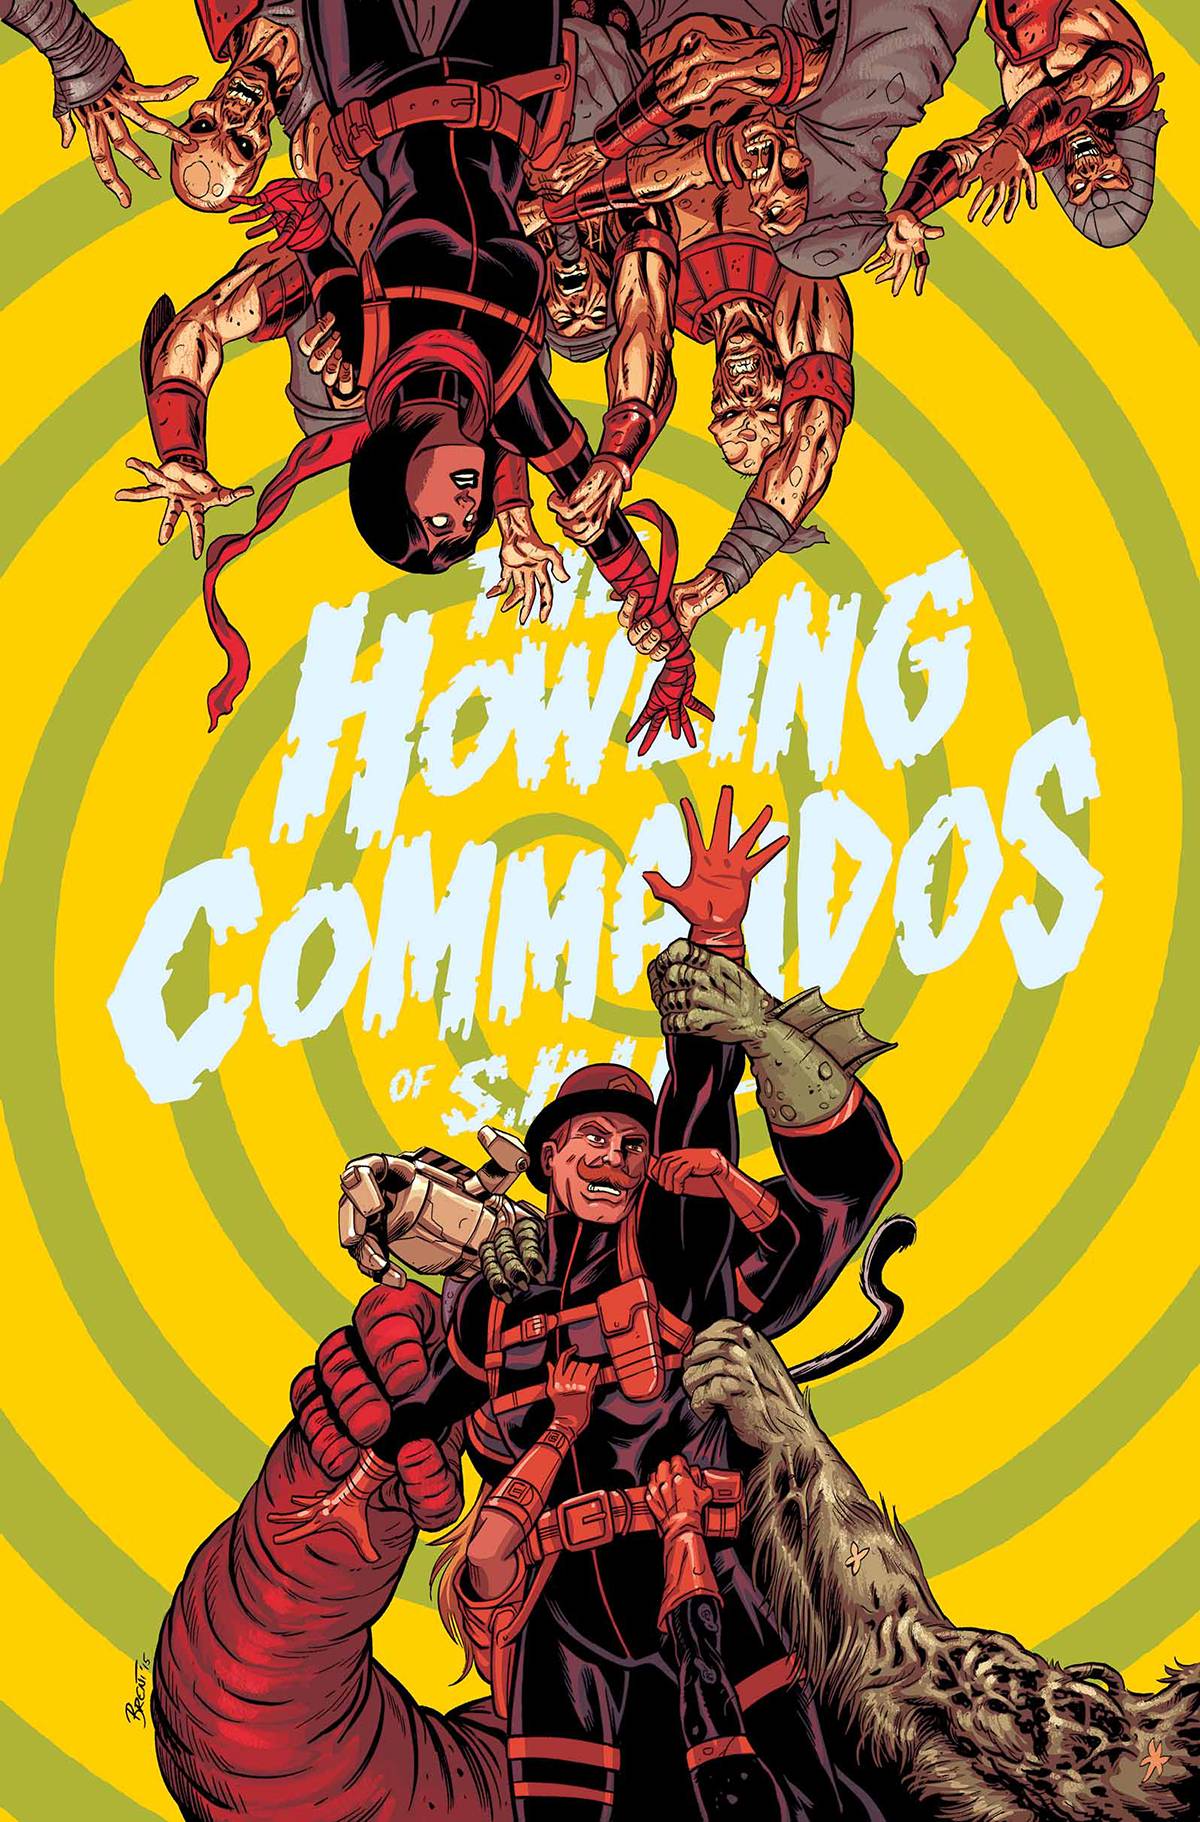 Howling Commandos of S.H.I.E.L.D. #5 (2015)